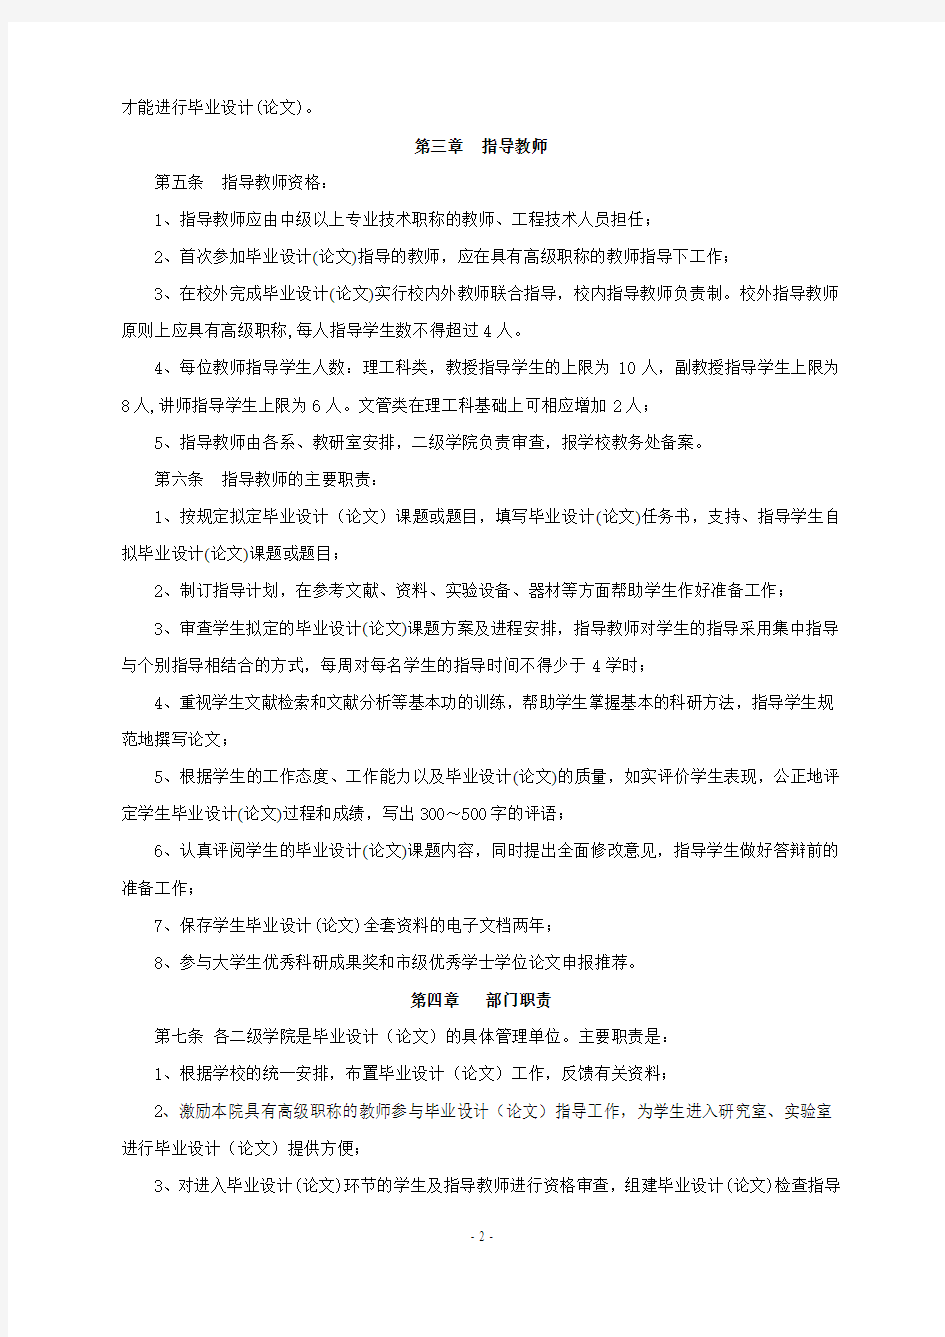 重庆工理工大学毕业设计(论文)管理规定征求意见稿